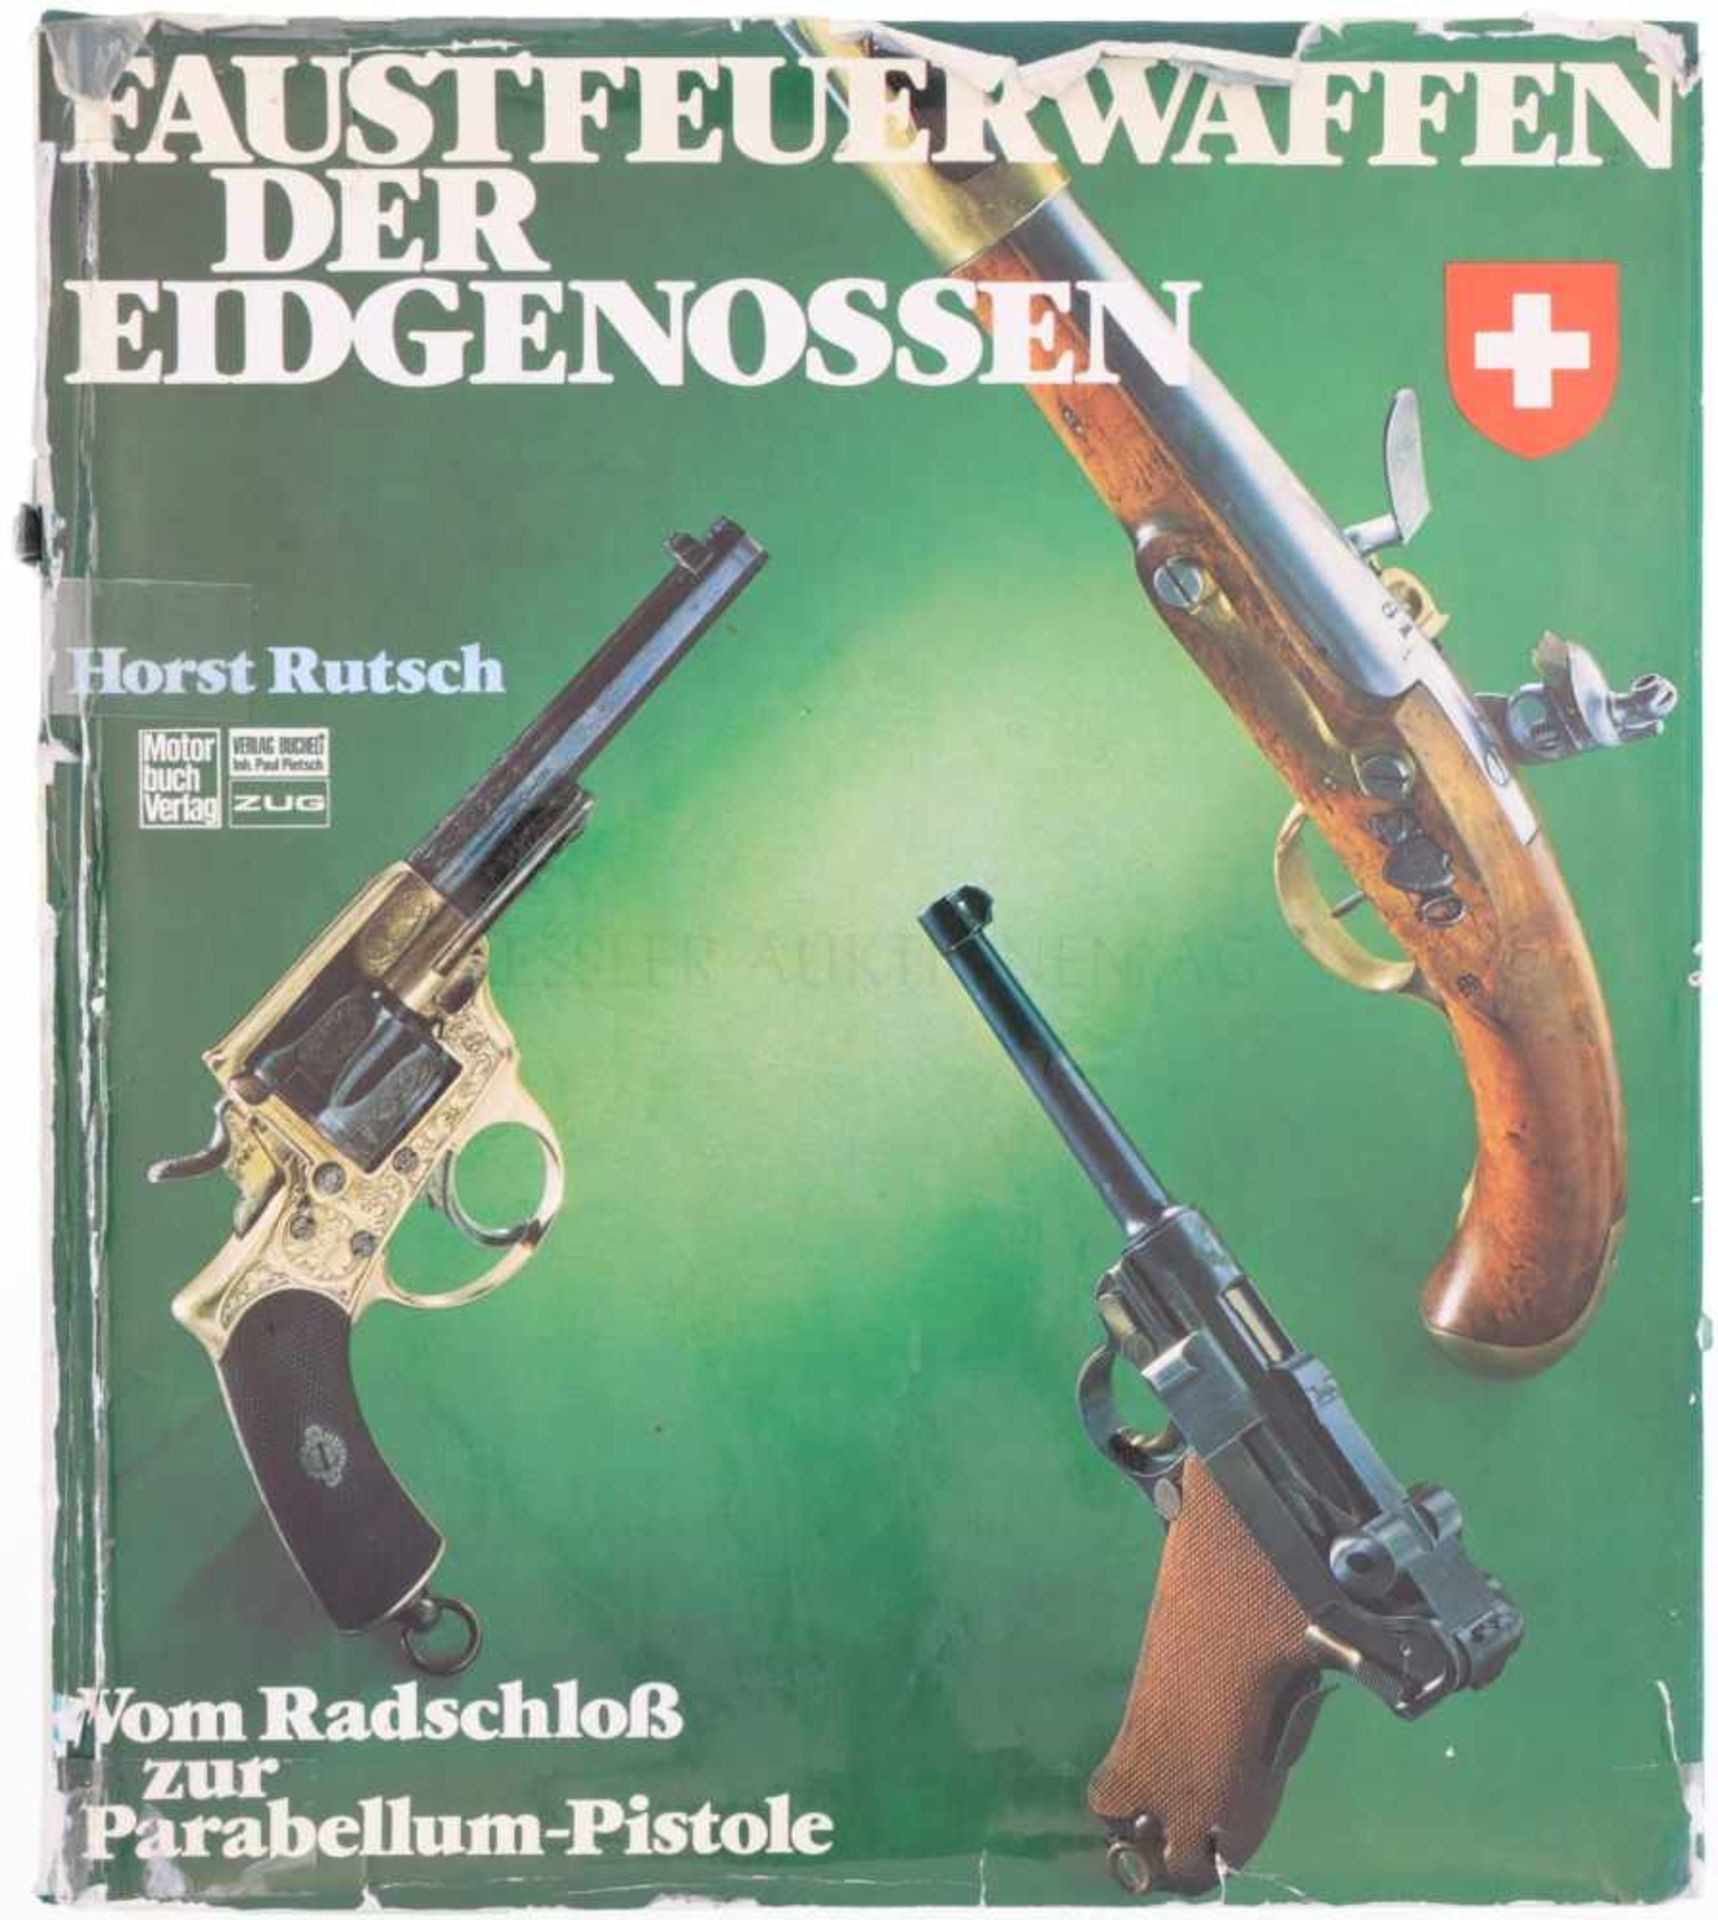 Rutsch, Faustfeuerwaffen der Eidgenossen Längst vergriffenes Standardwerk über Schweizer